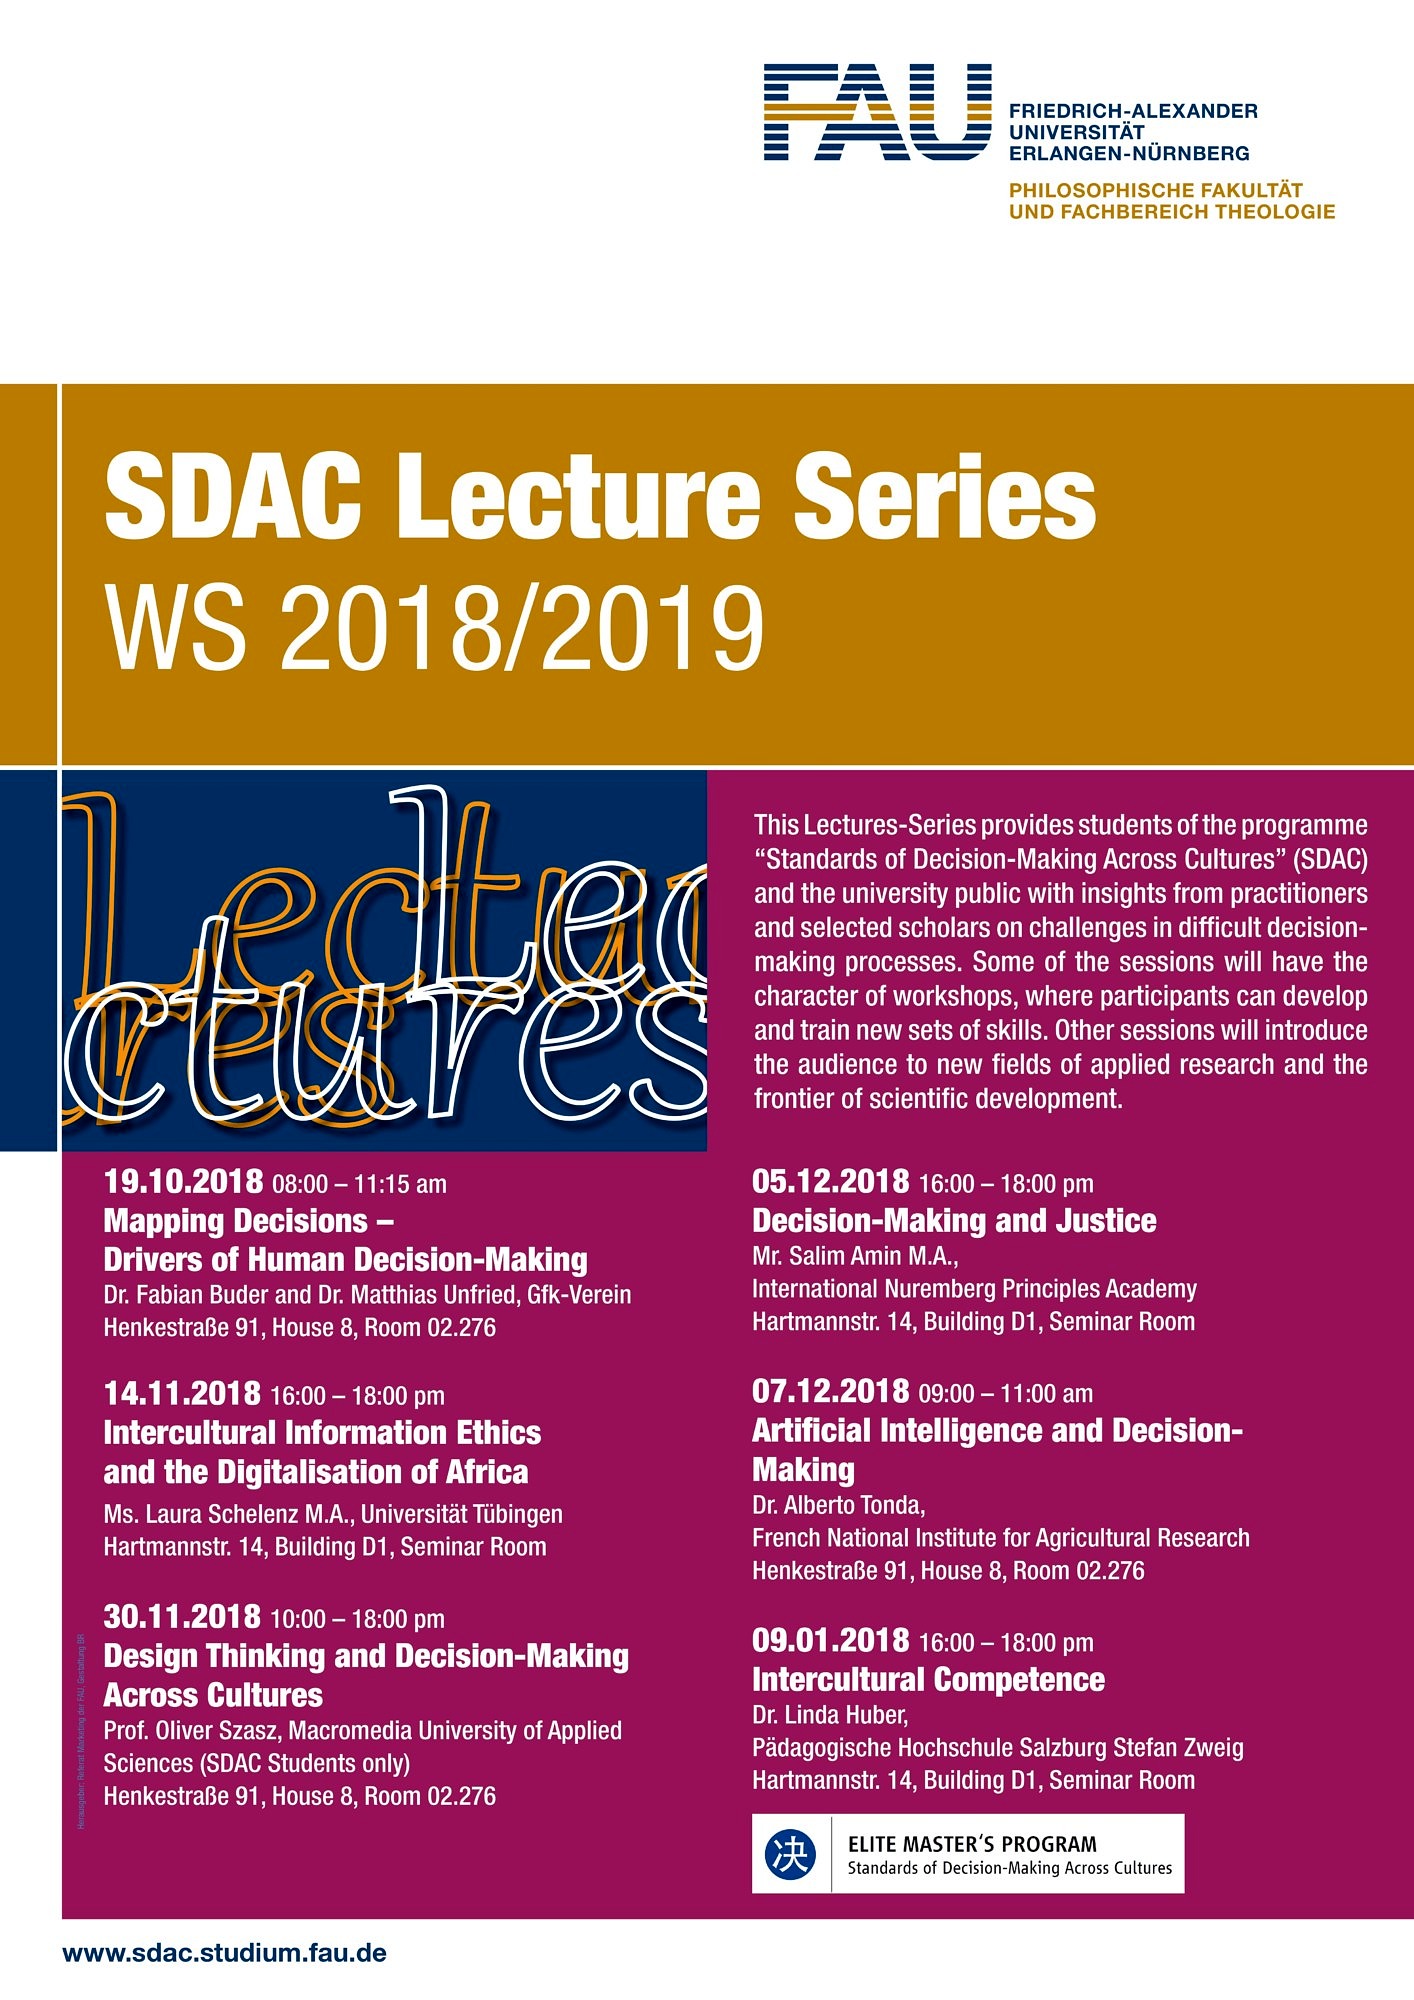 Zum Artikel "SDAC Lecture Series WS 2018/19"